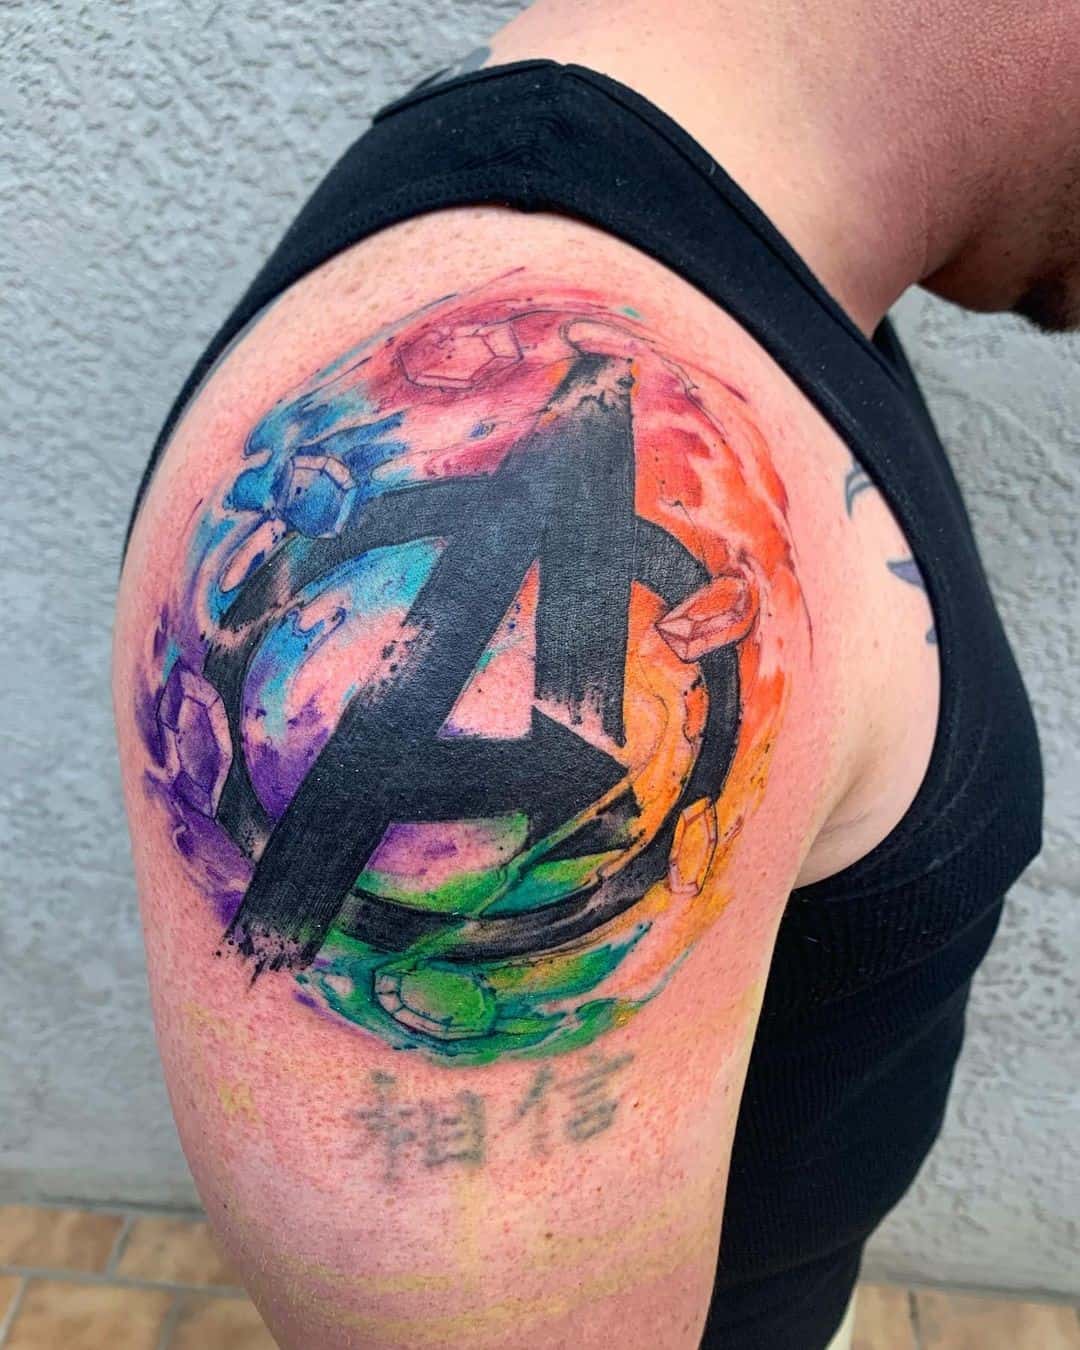 Tatuaje en el hombro, símbolo de los Vengadores